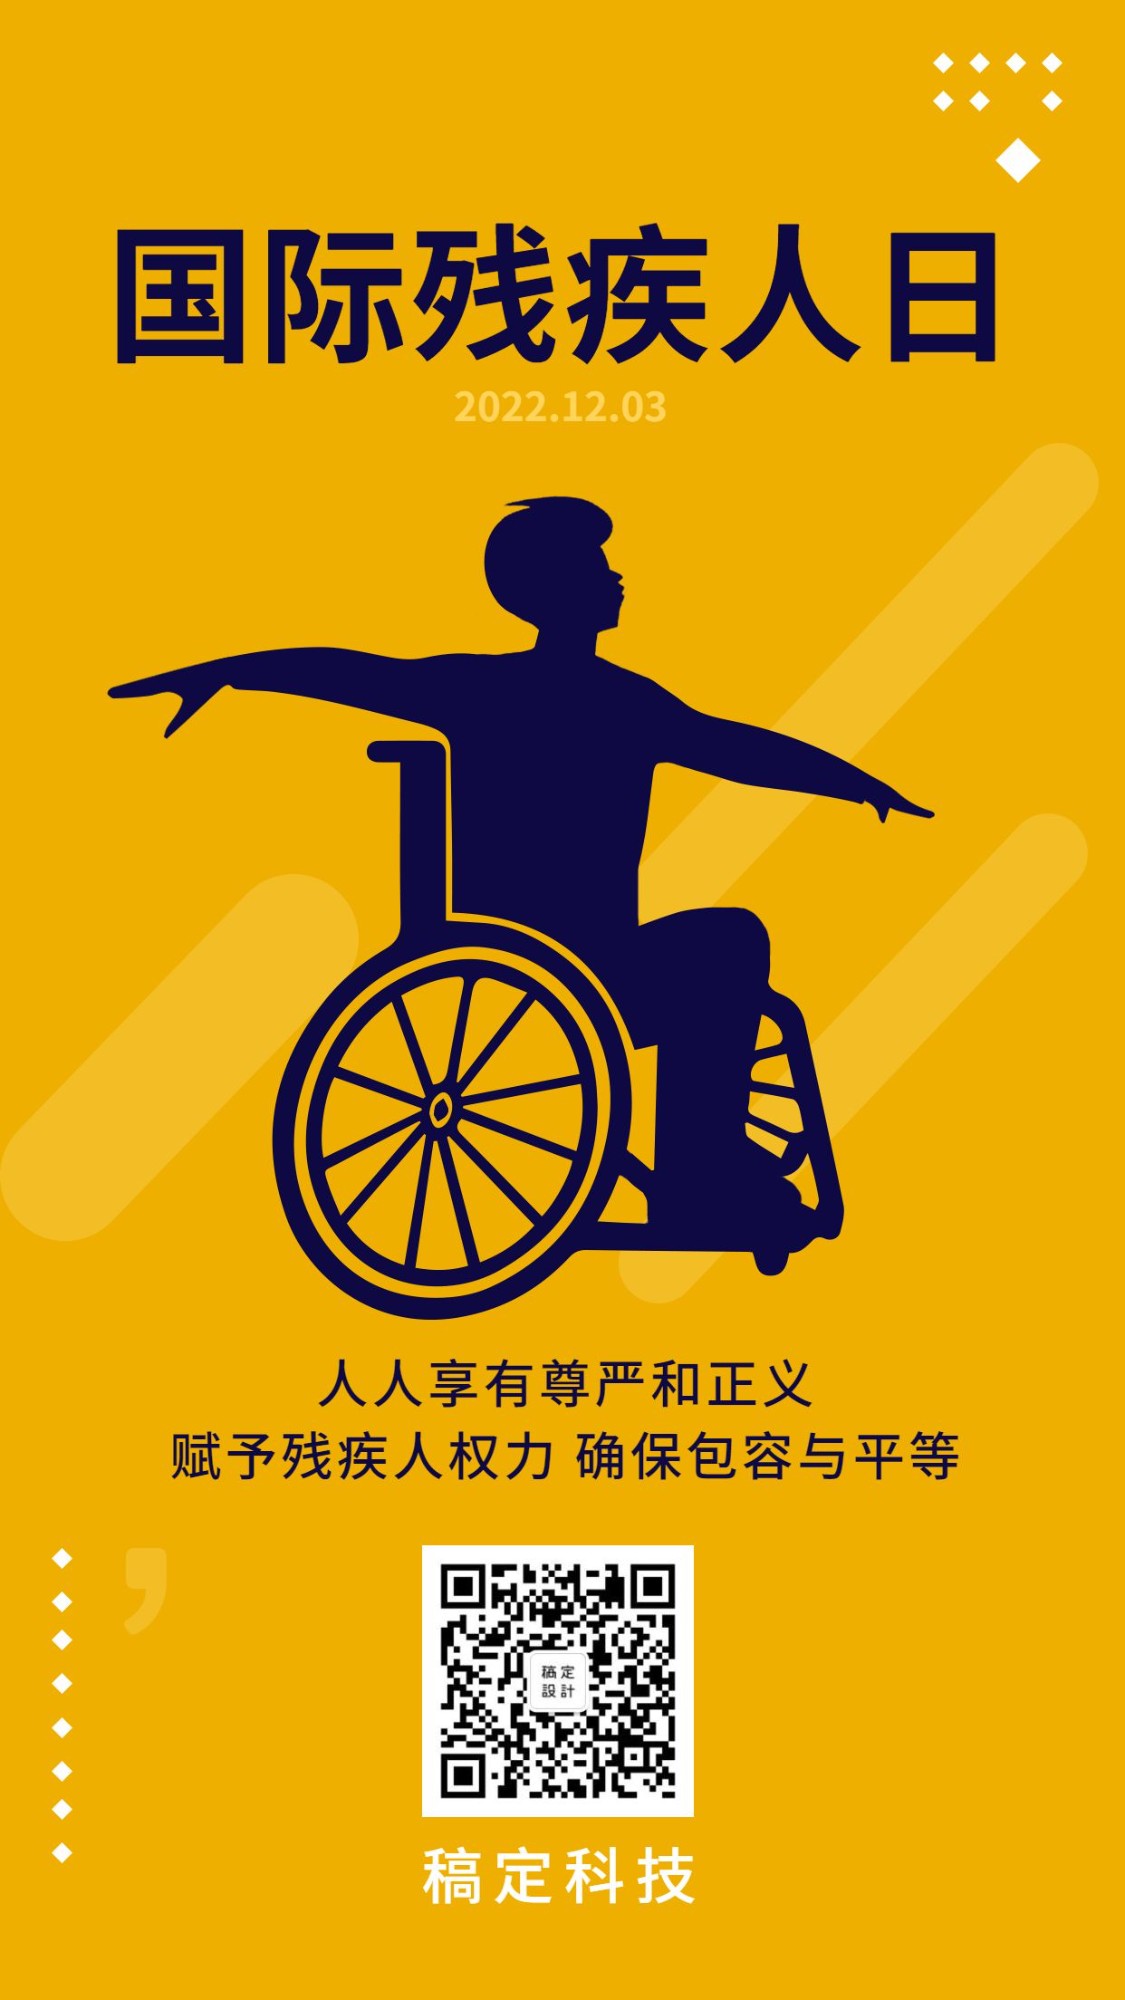 国际残疾人日公益宣传手绘手机海报